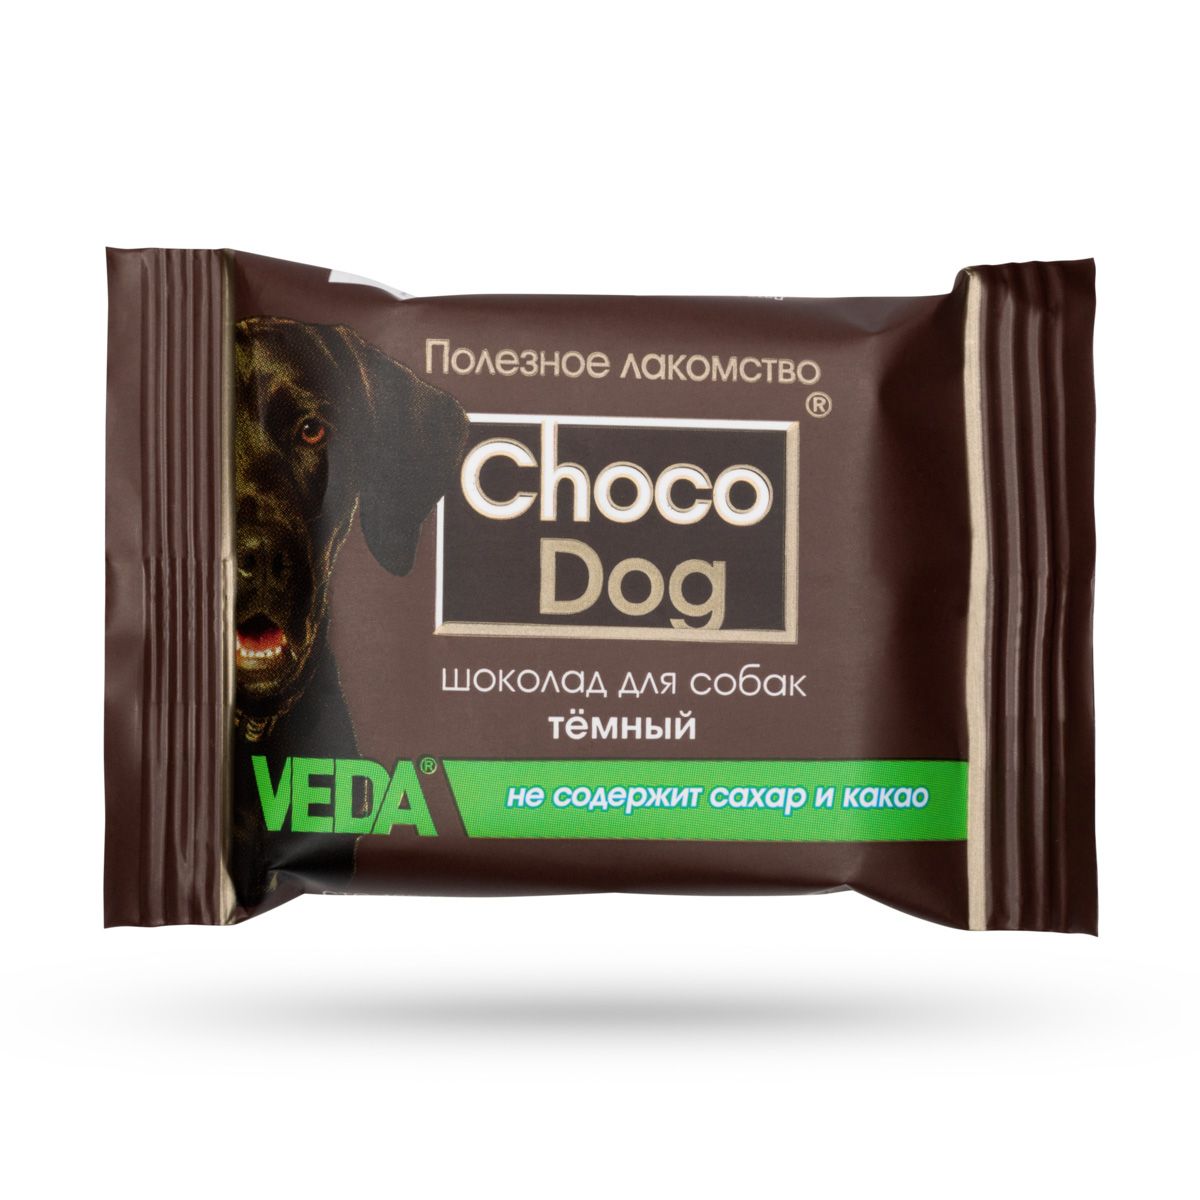 Шоколад Choco Dog темный для собак 15 г 1